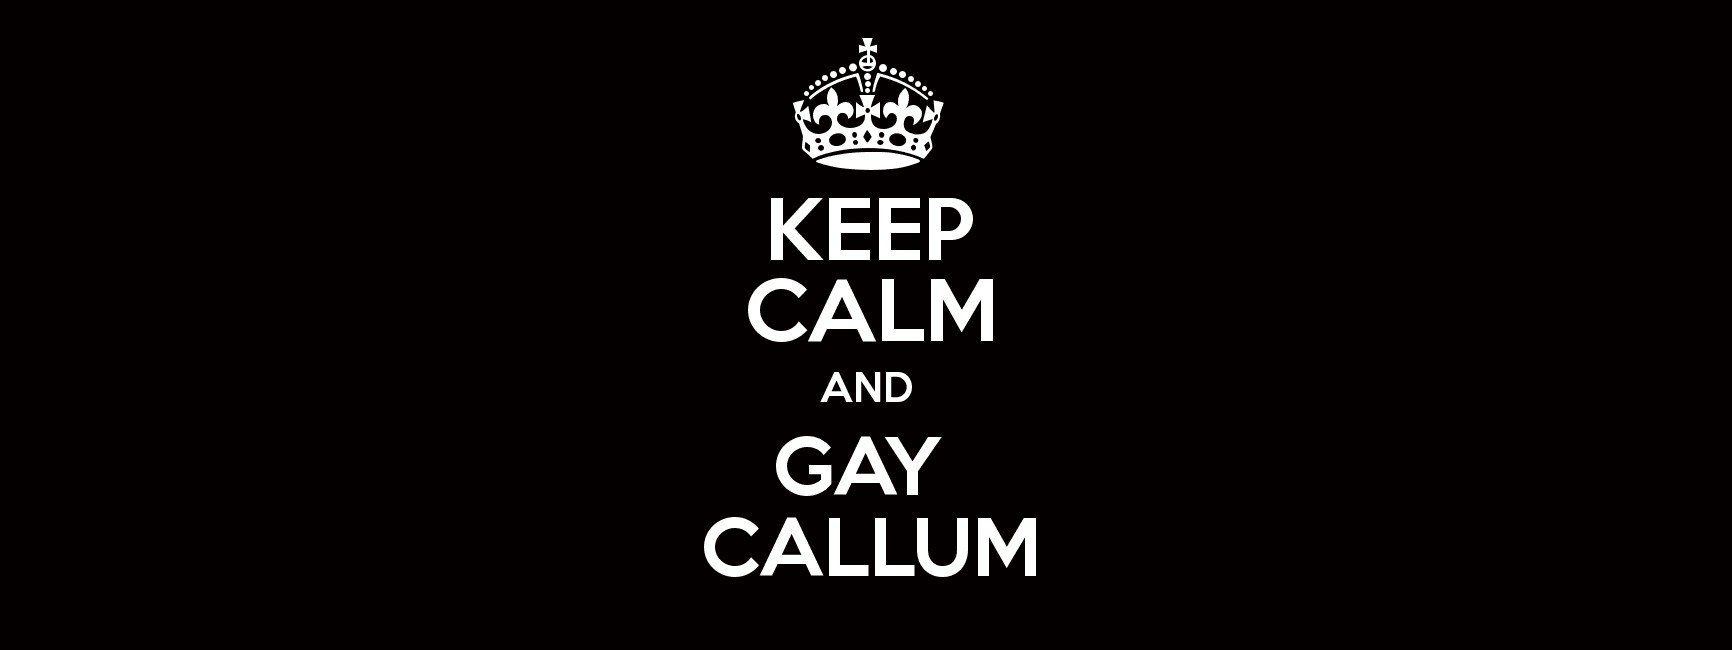 Callums gay